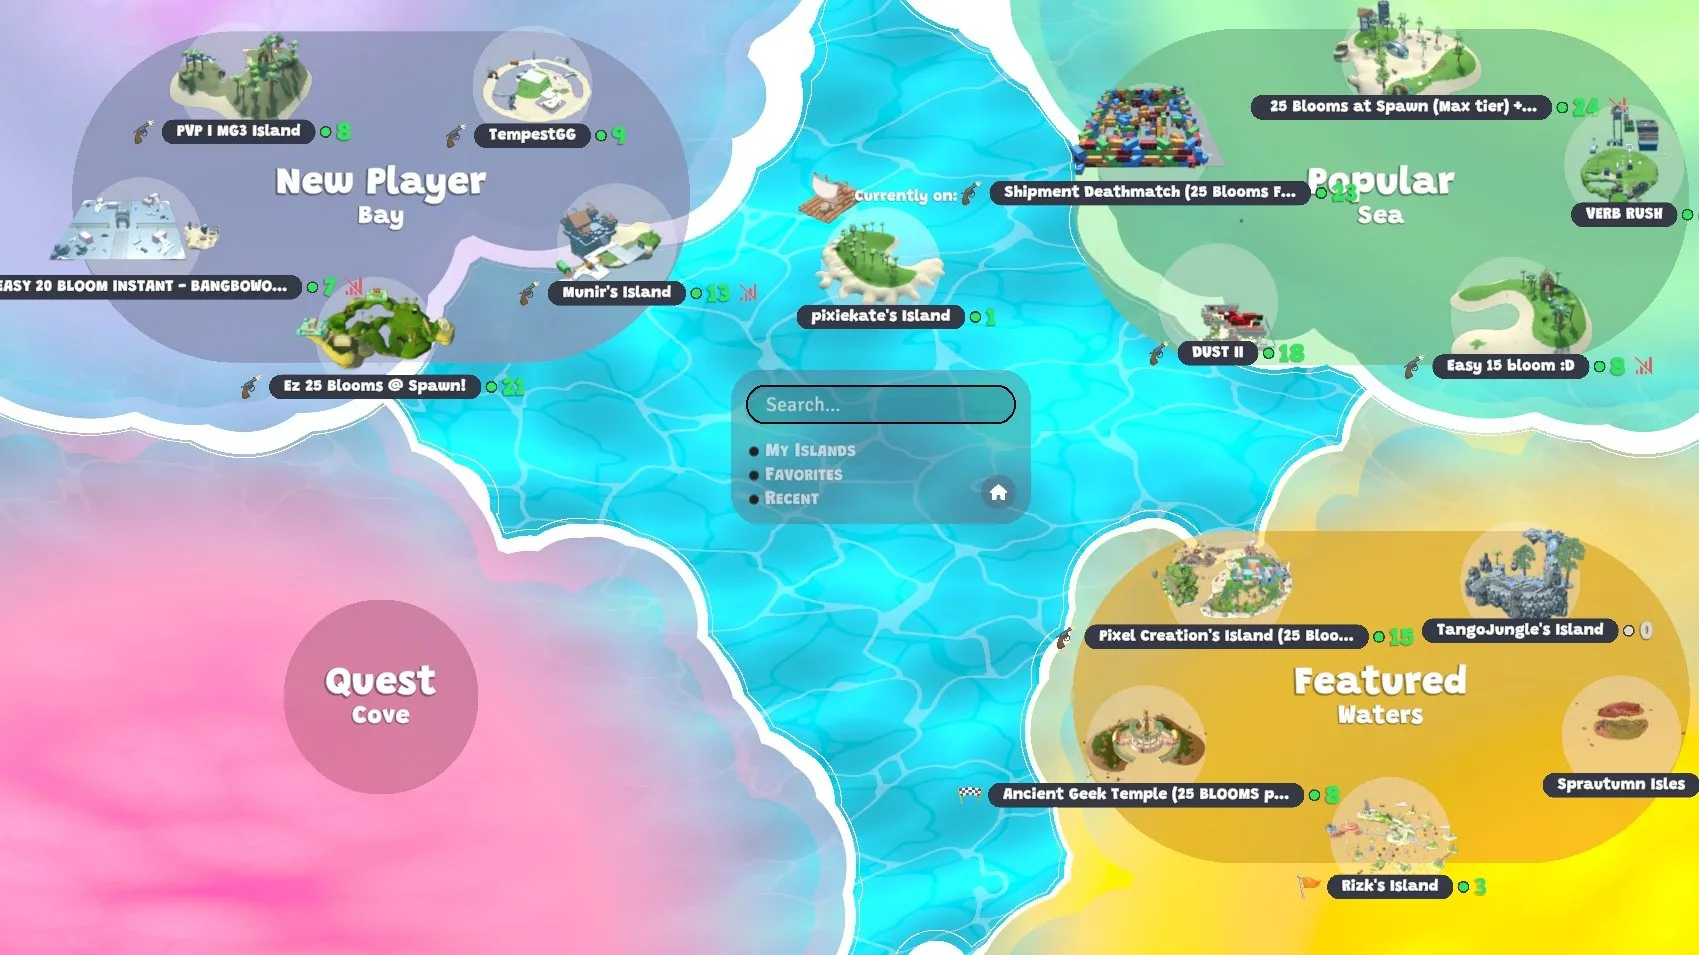 Знімок екрана гри, на якому показано карту з популярними островами, «пропонованим» островом і островами, орієнтованими на нових гравців.